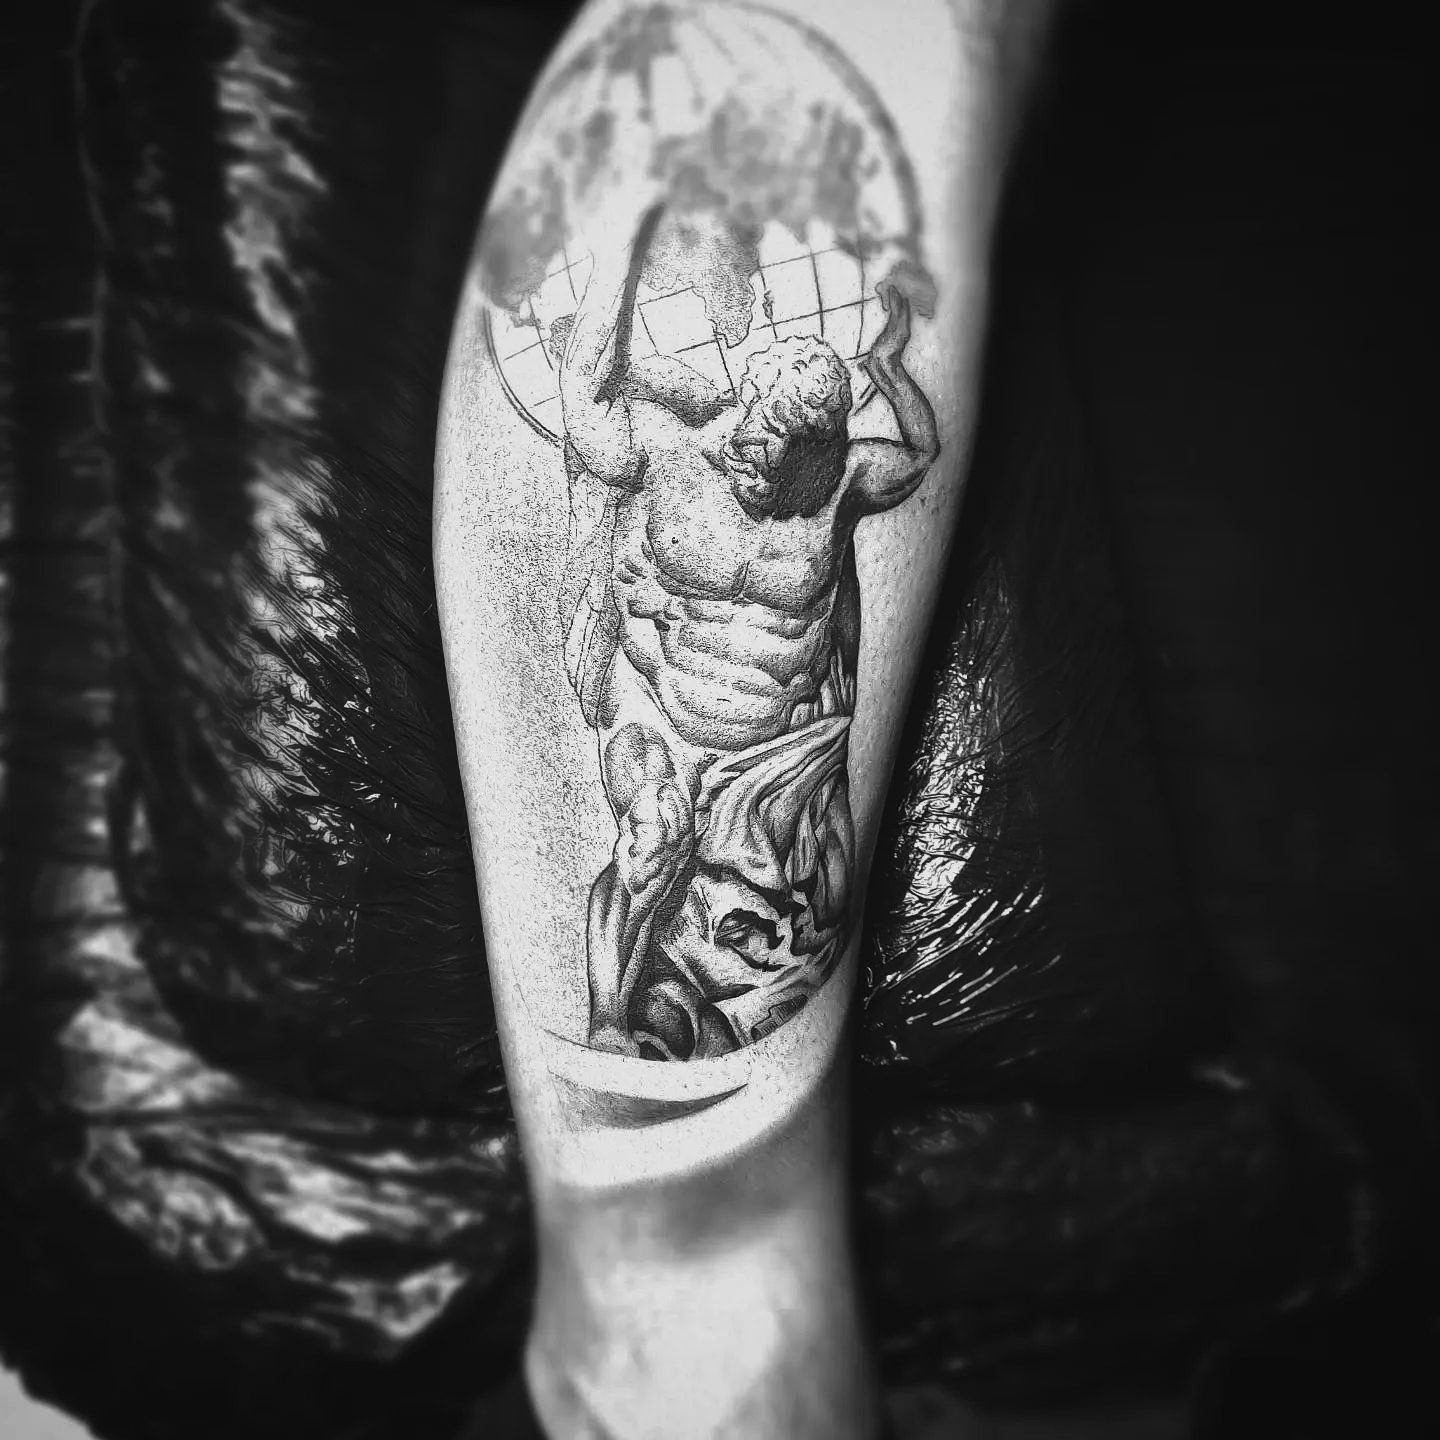 Tatuaż - postać z mitologii greckiej, Atlas dźwigający świat